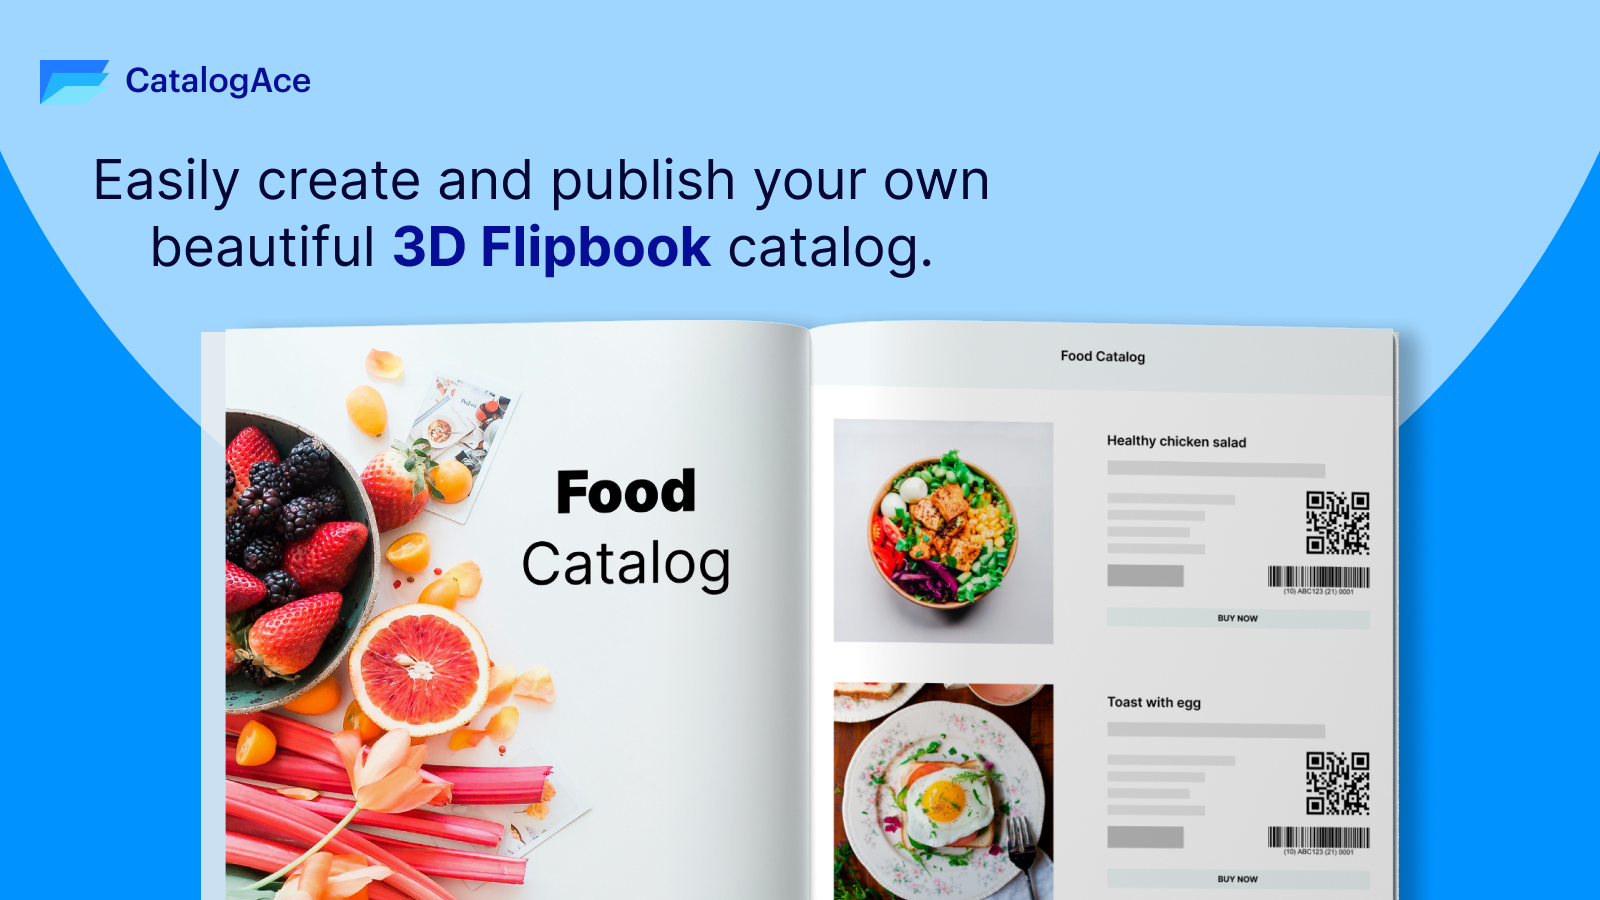 Crea y publica fácilmente tu propio hermoso Flipbook 3D